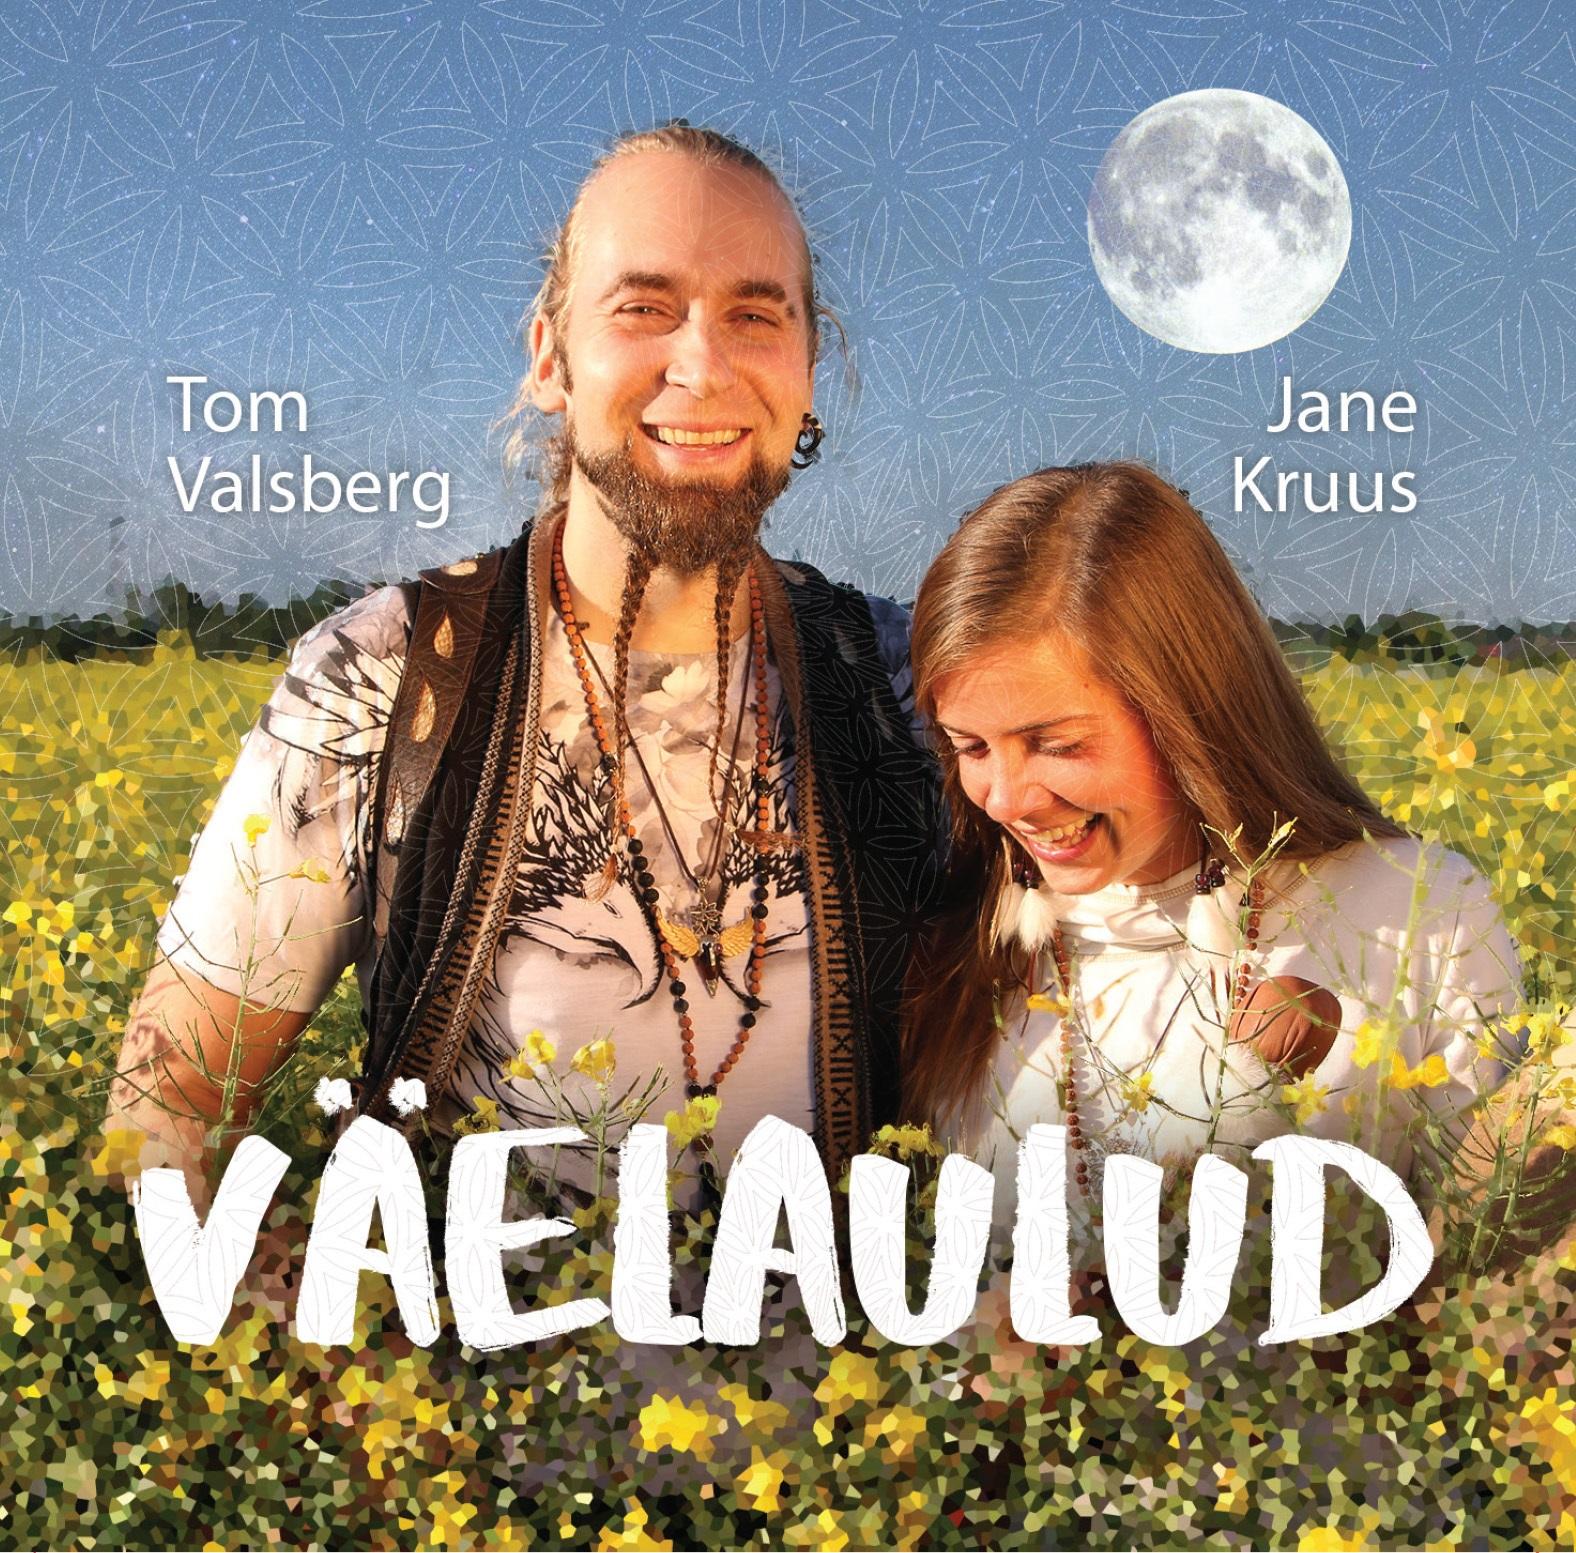 TOM VALSBERG & JANE KRUUS - VÄELAULUD (2017) CD